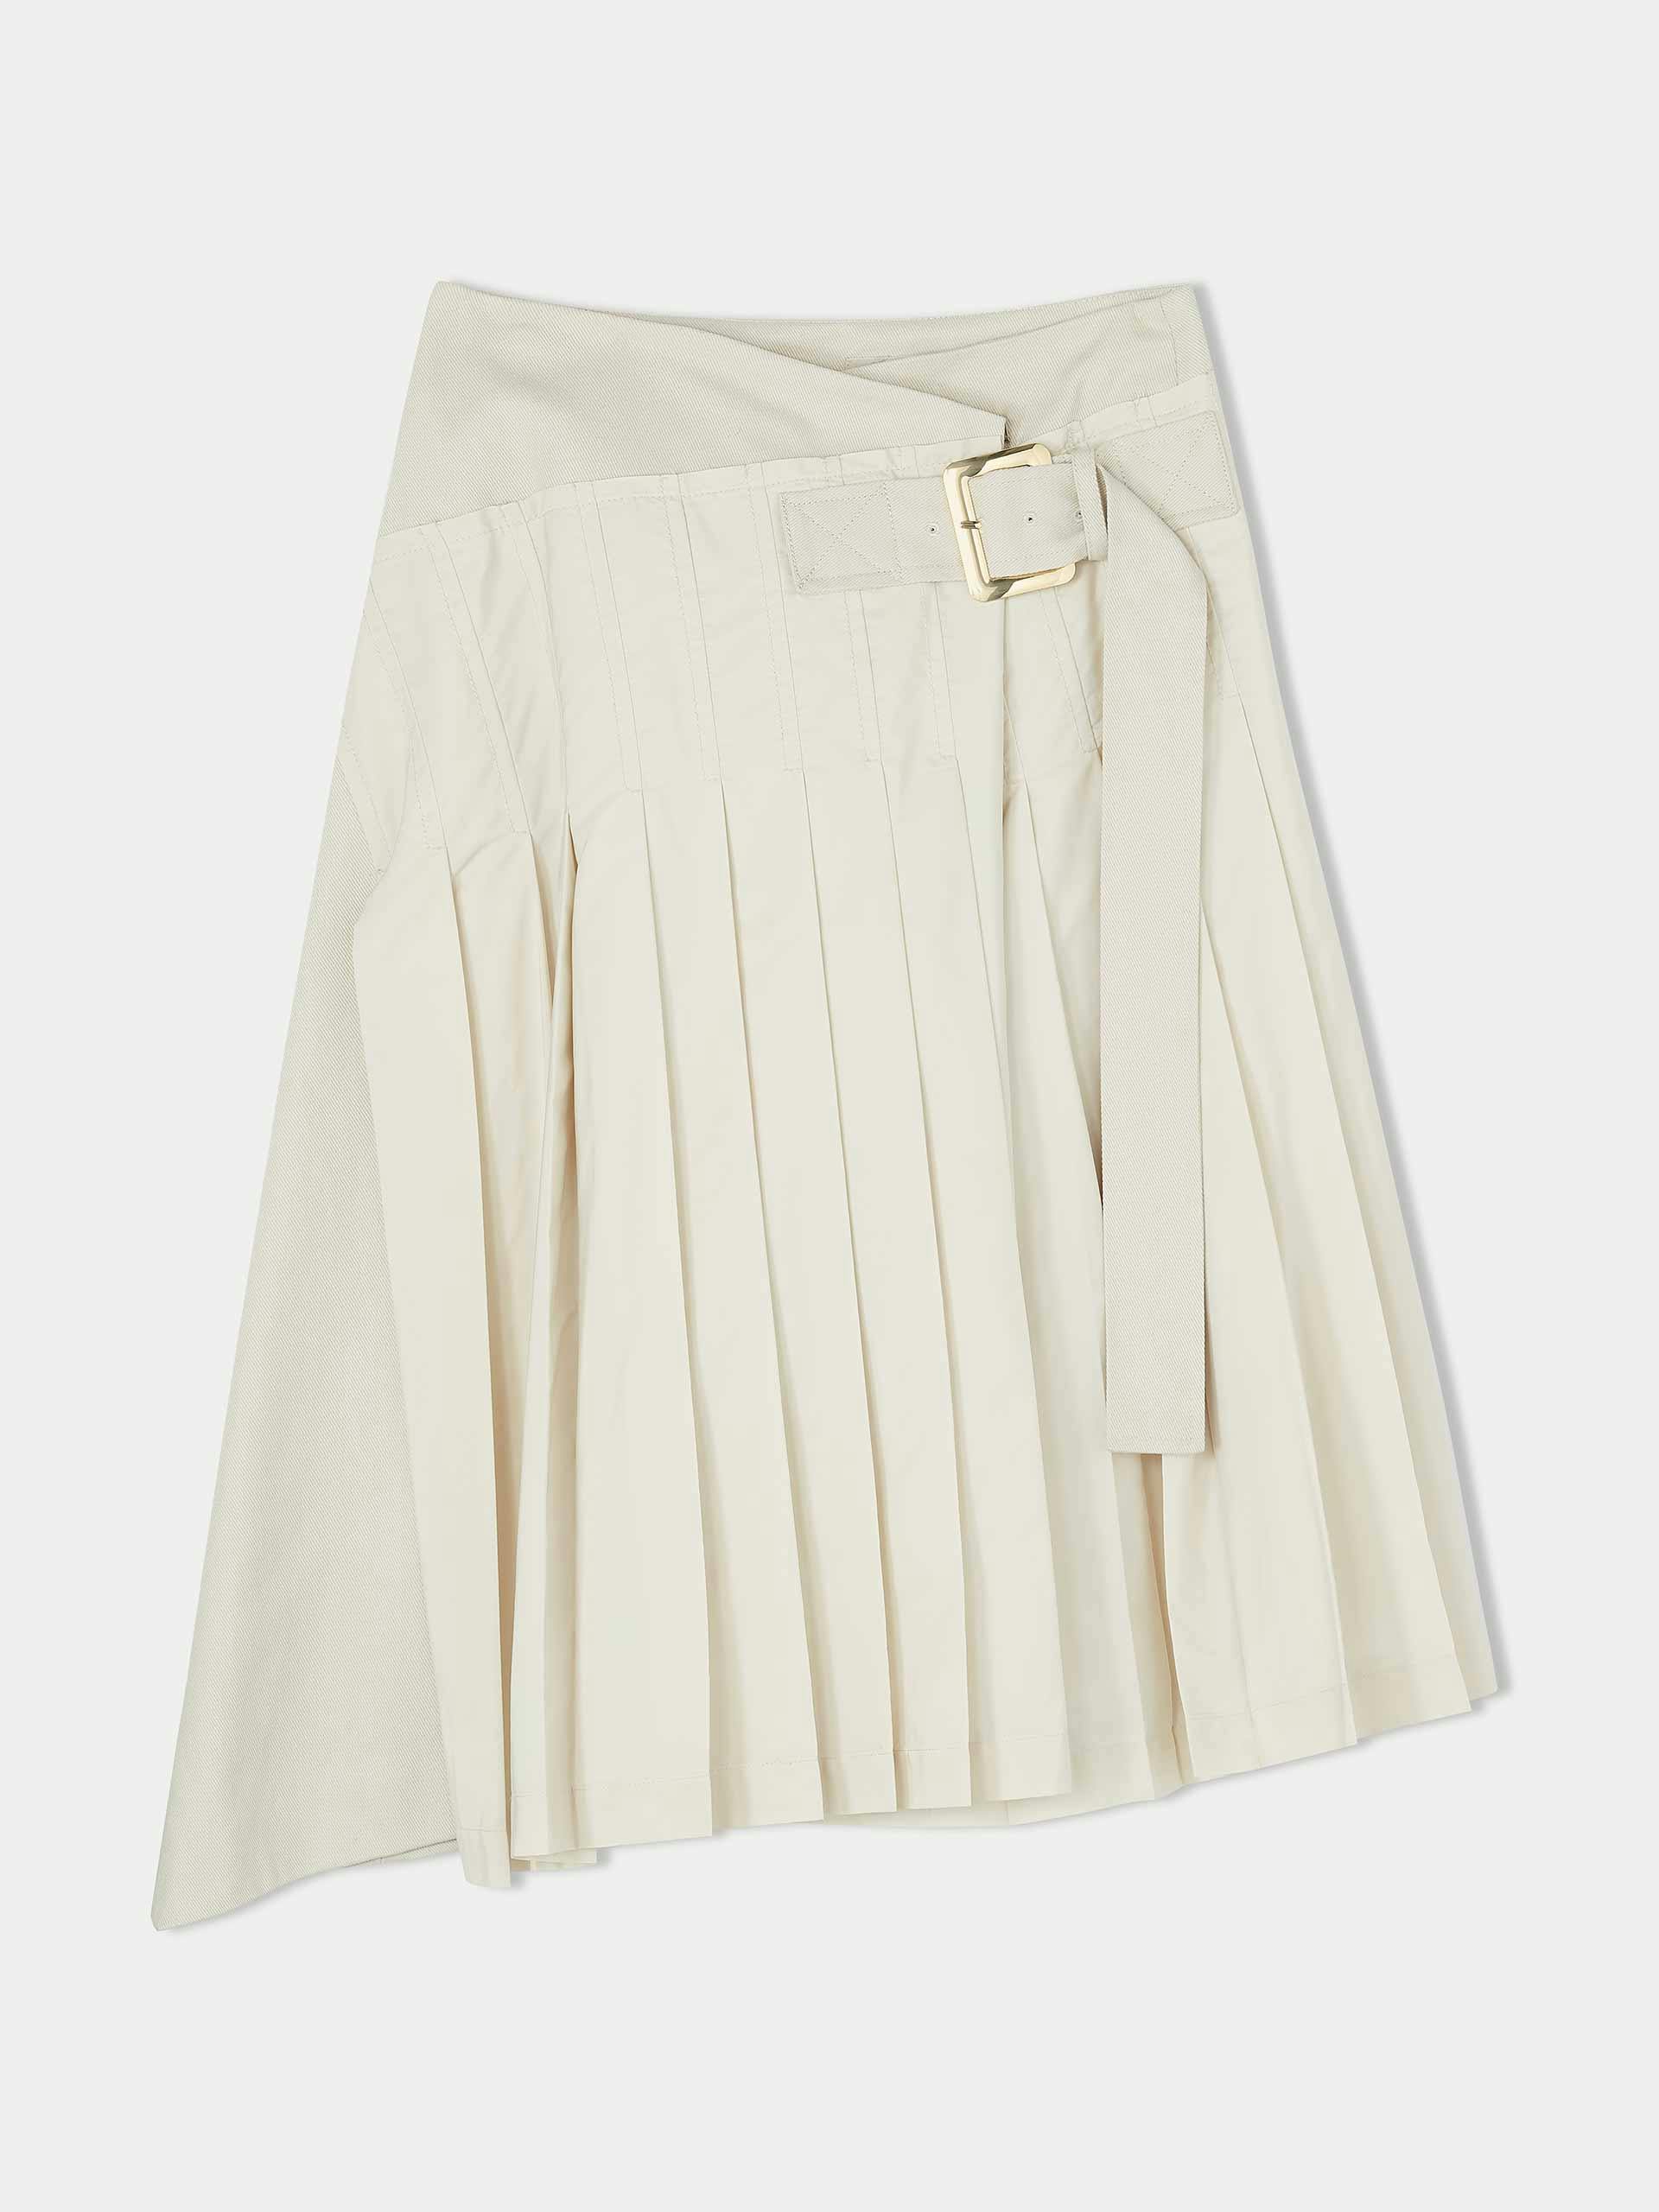 Cream pleated kilt skirt